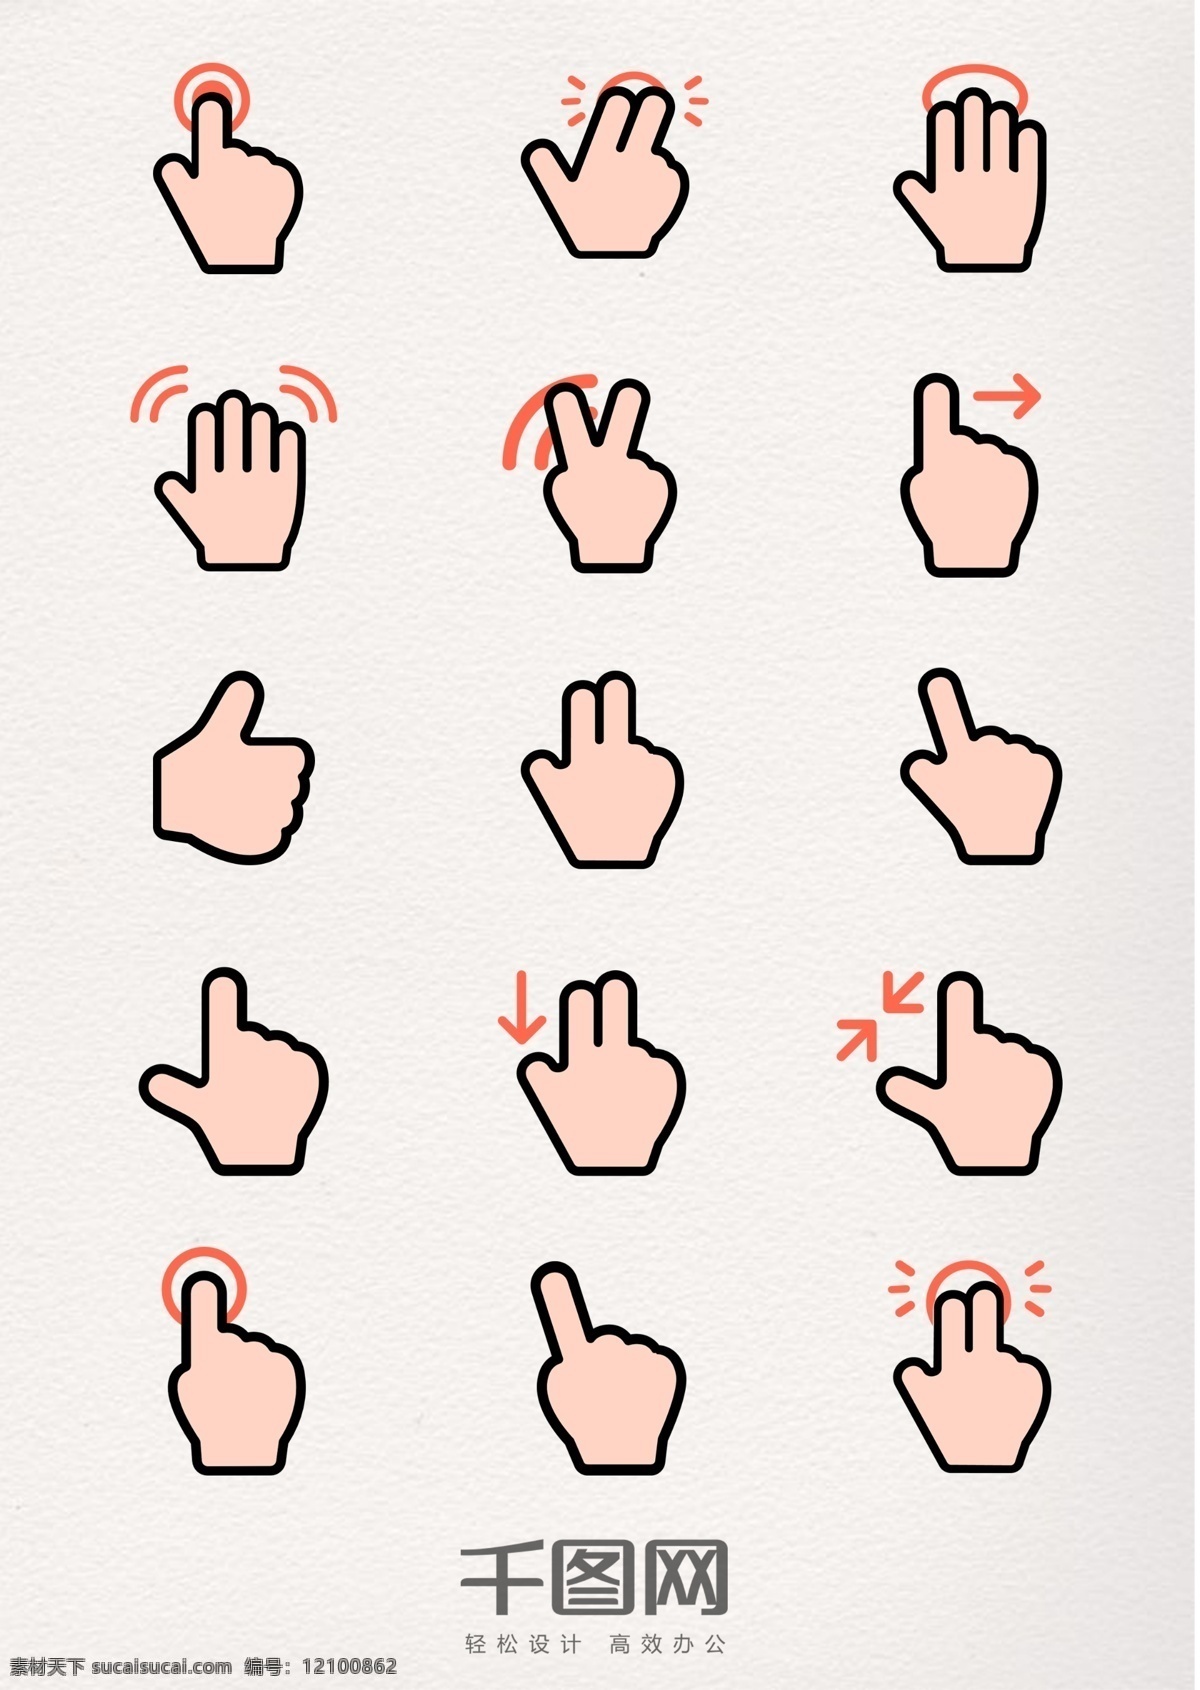 组 可爱 手指 图标 设计素材 手势 手指图标 标识 psd素材 指引 平面